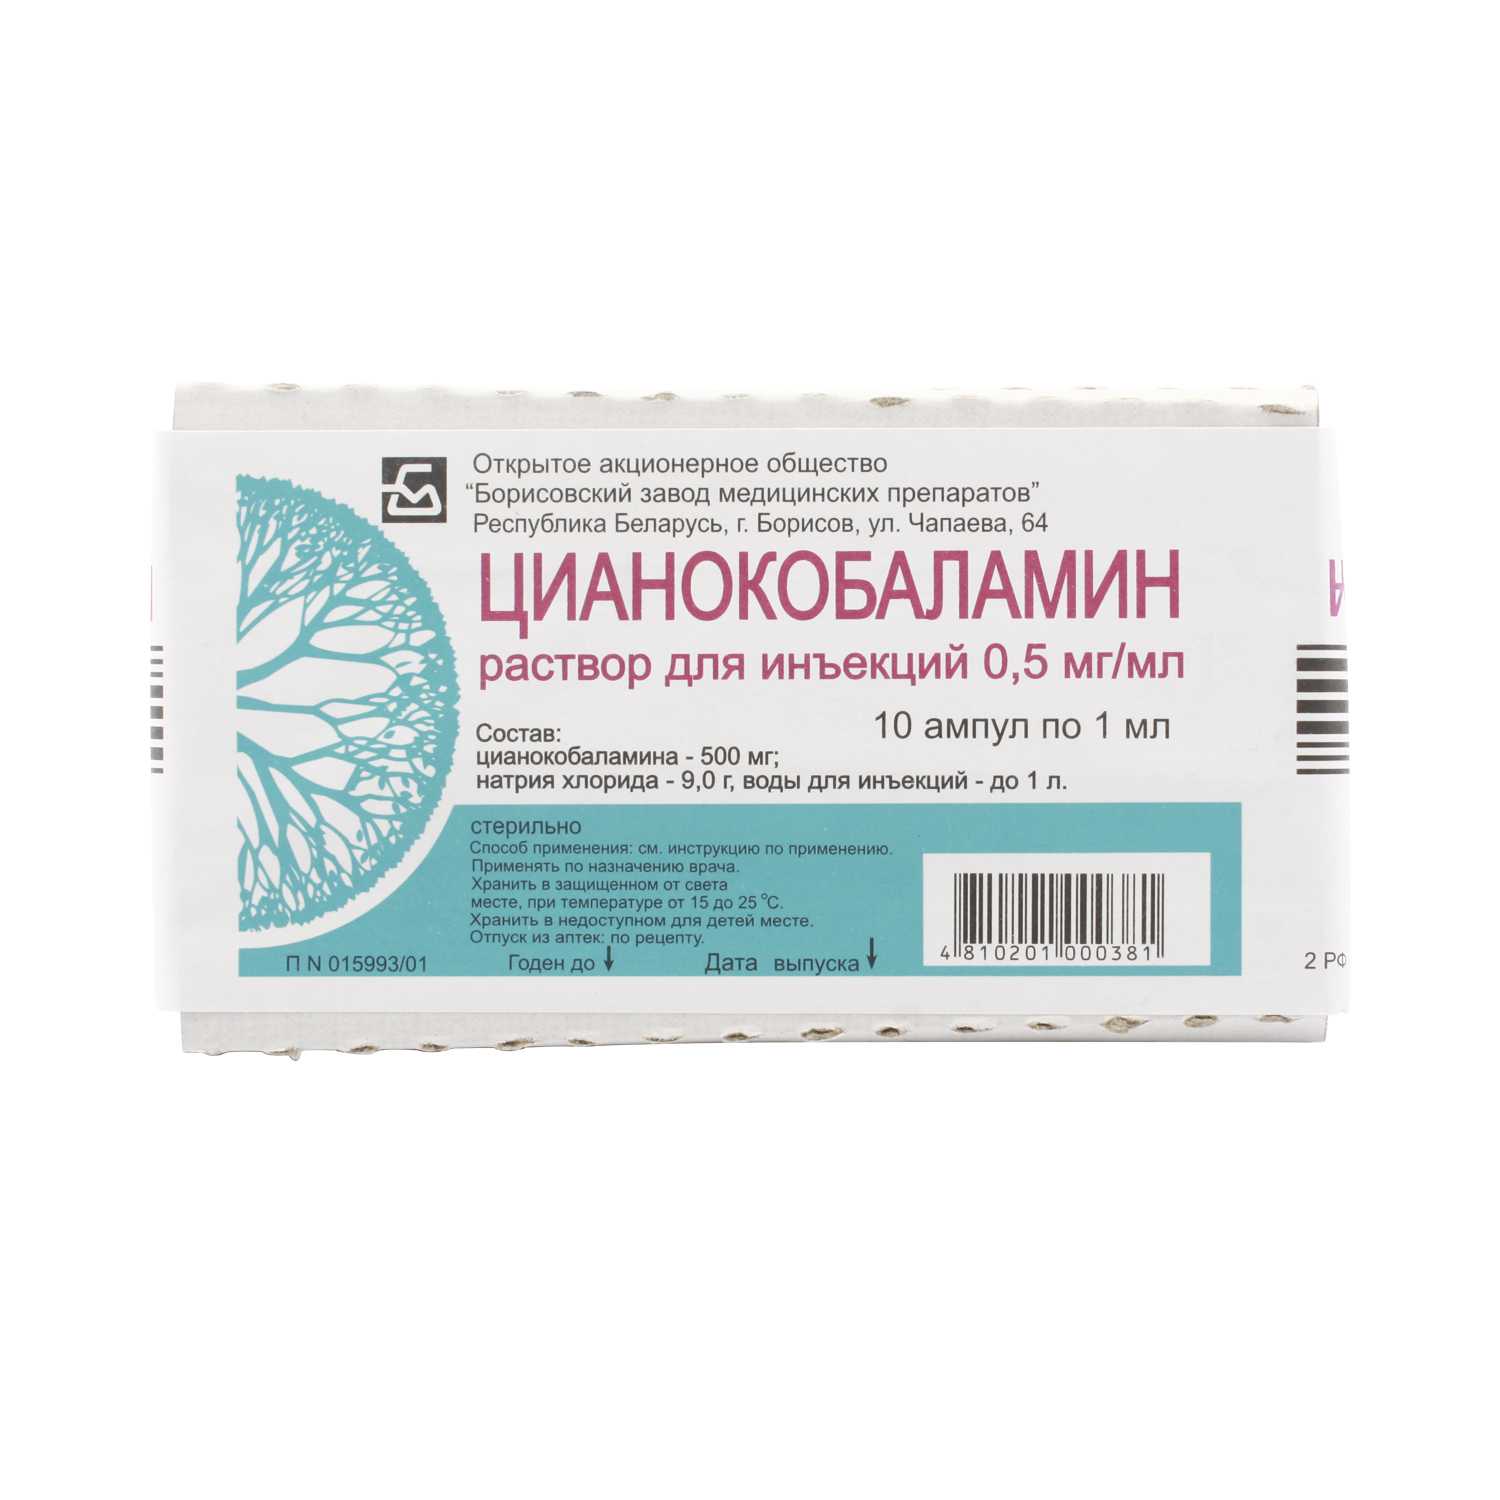 Цианокобаламин раствор 0,5 мг/мл ампулы 1 мл 10 шт. БЗМП